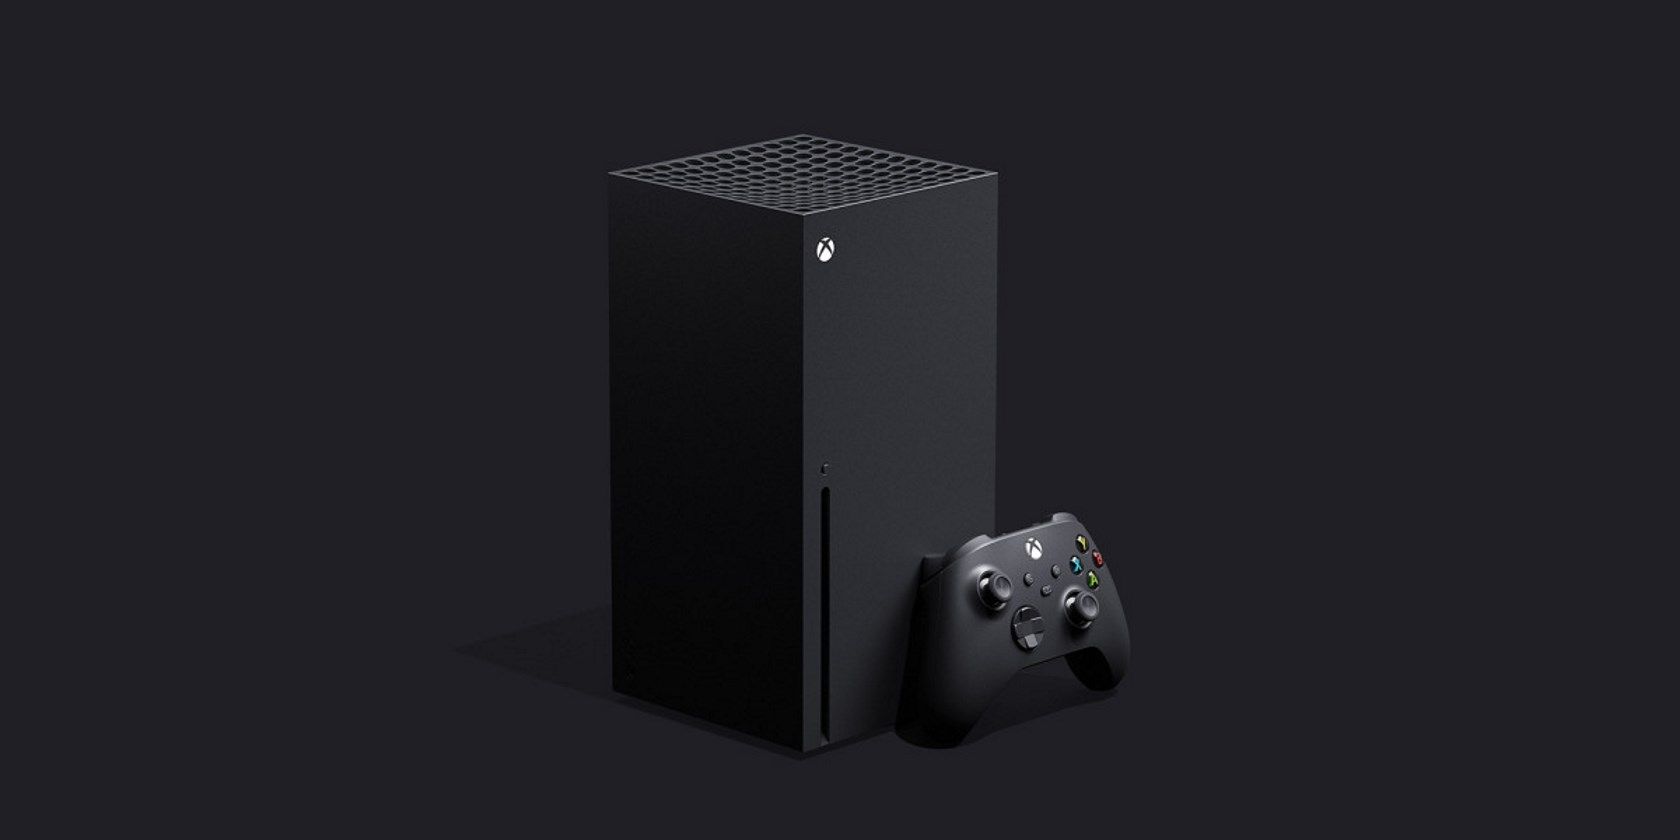 An Xbox Series X console